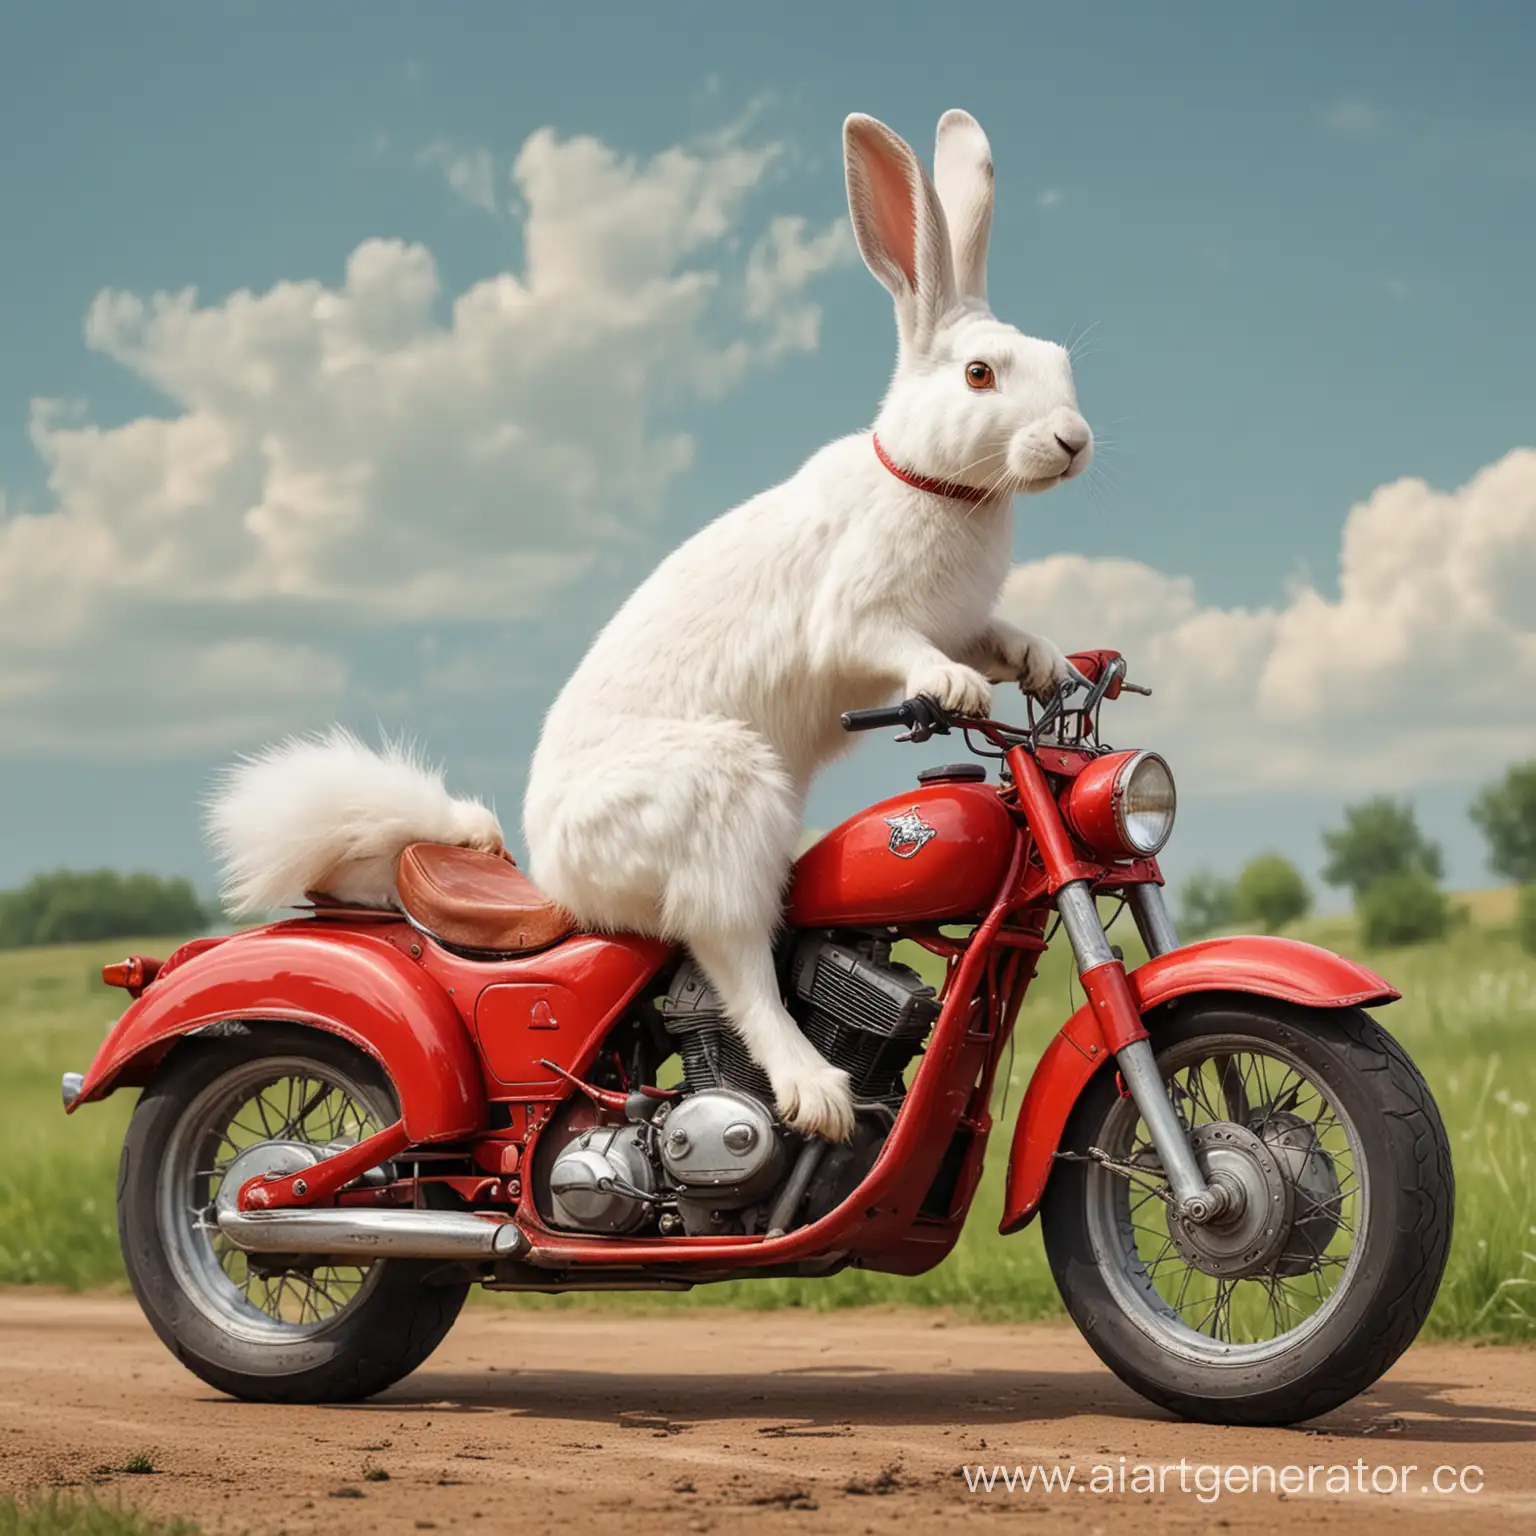 белый заяц едет на красном мотоцикле